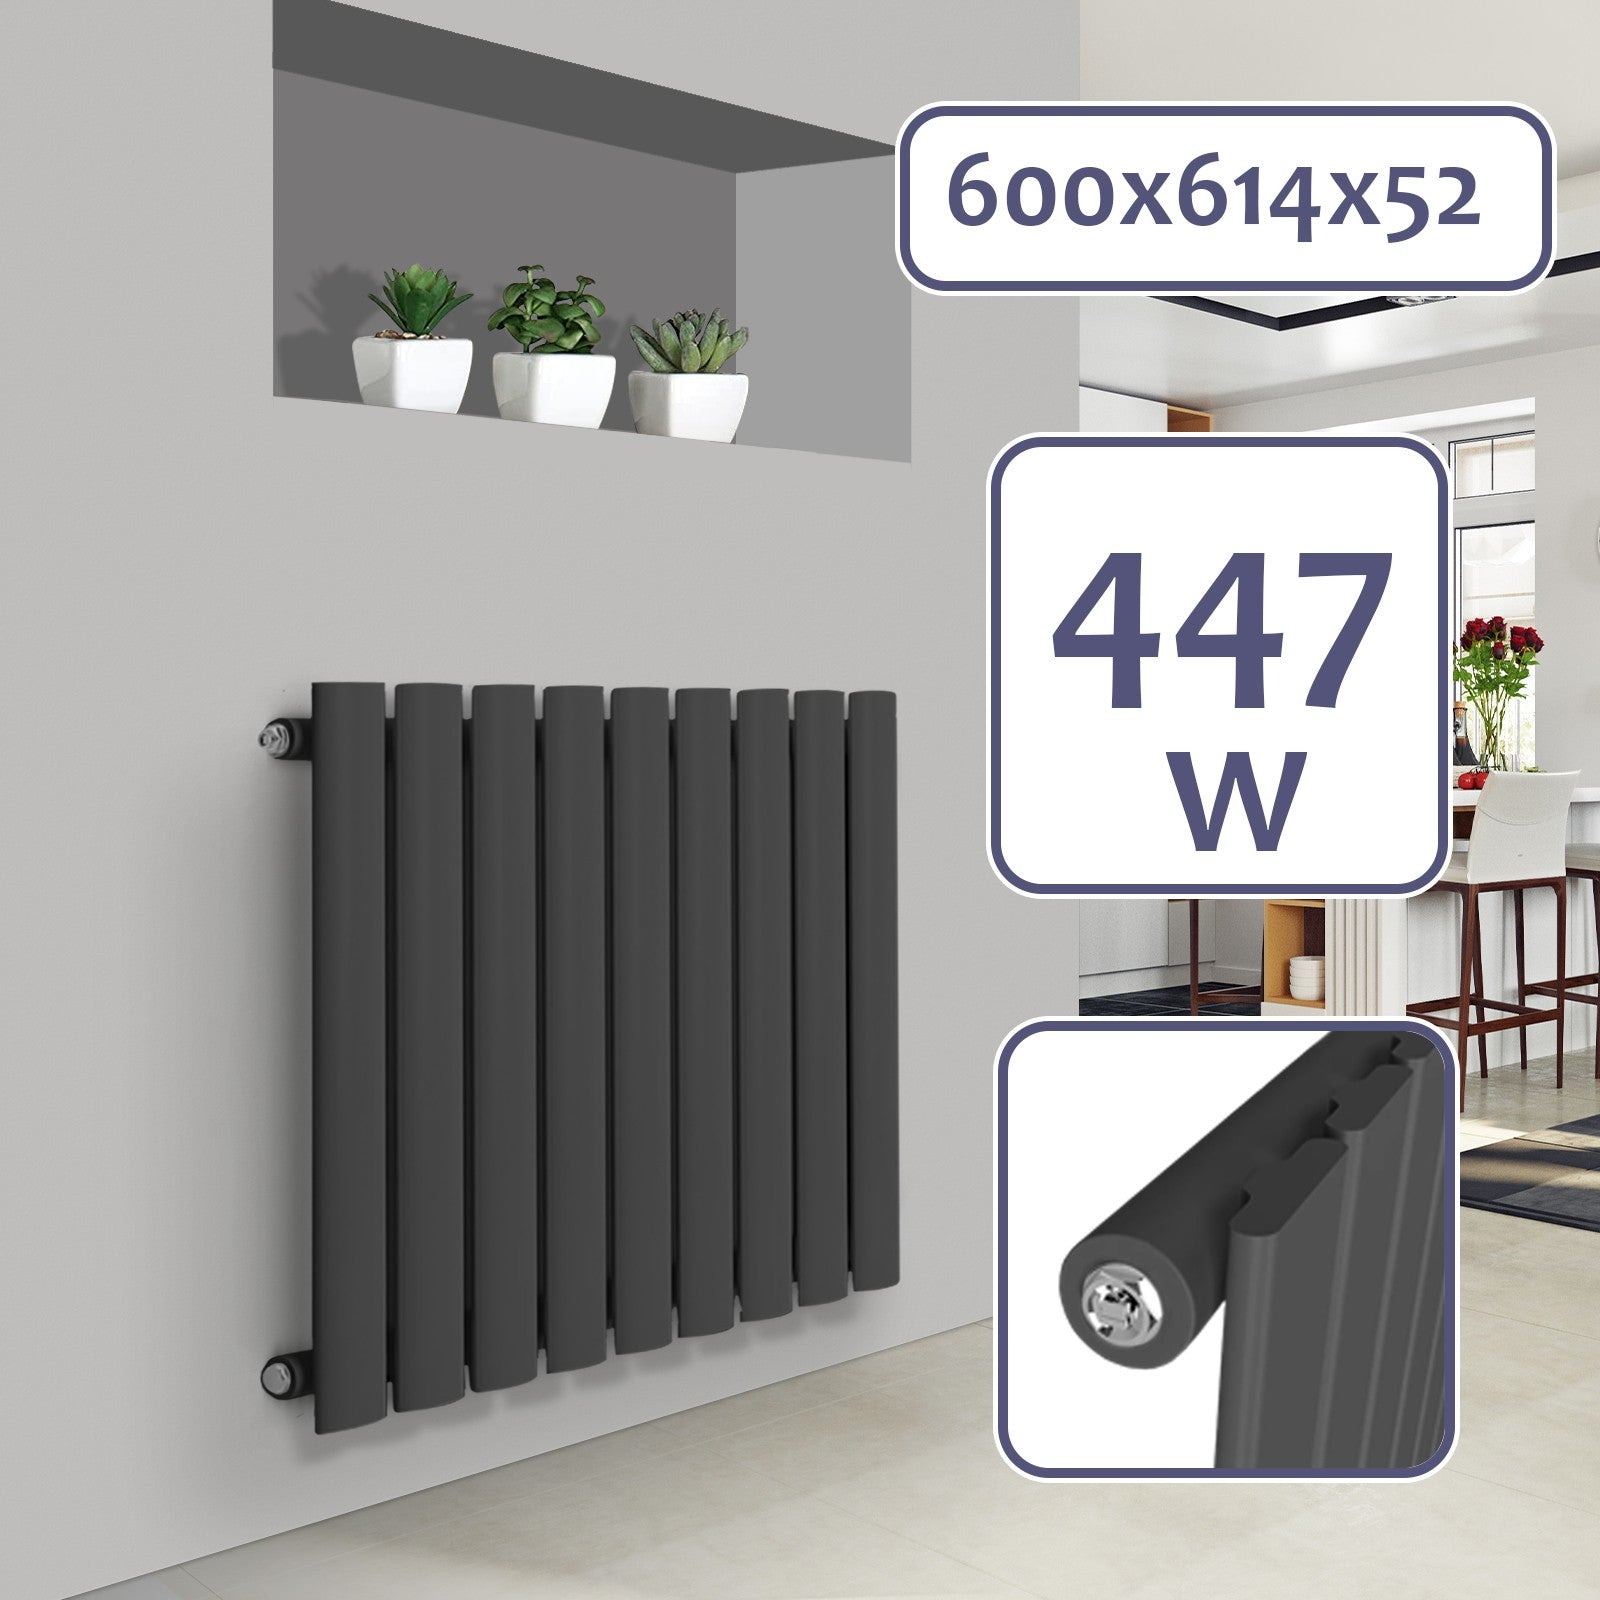 Billede af Aquamarine ® radiator - vandret, 600 x 614 mm, 447W, stål, antracit